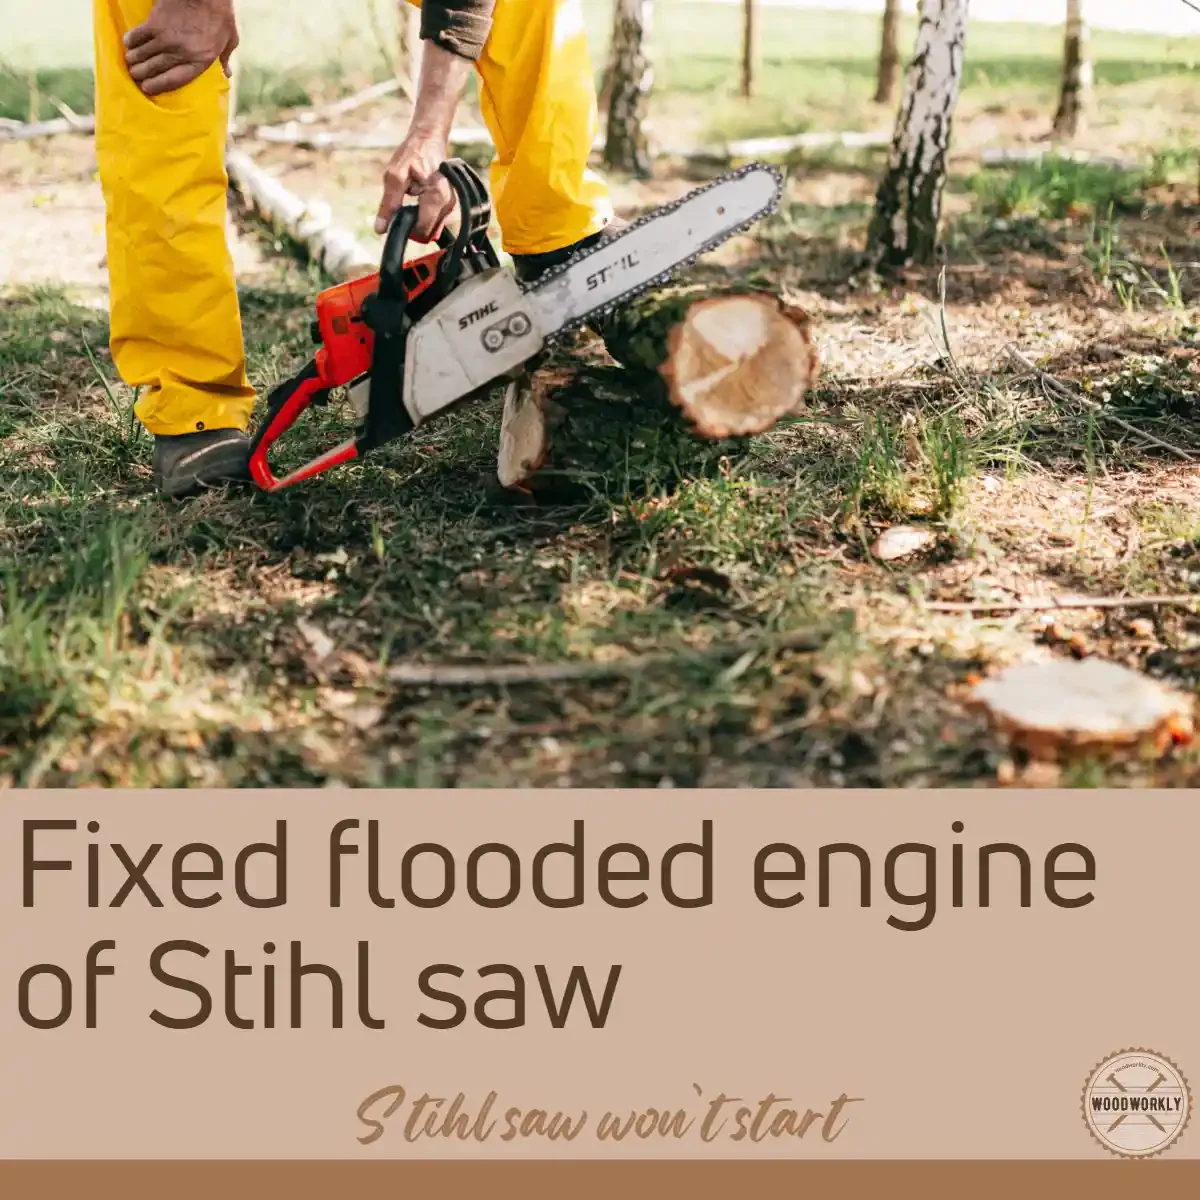 Fixed flooded engine of Stihl saw